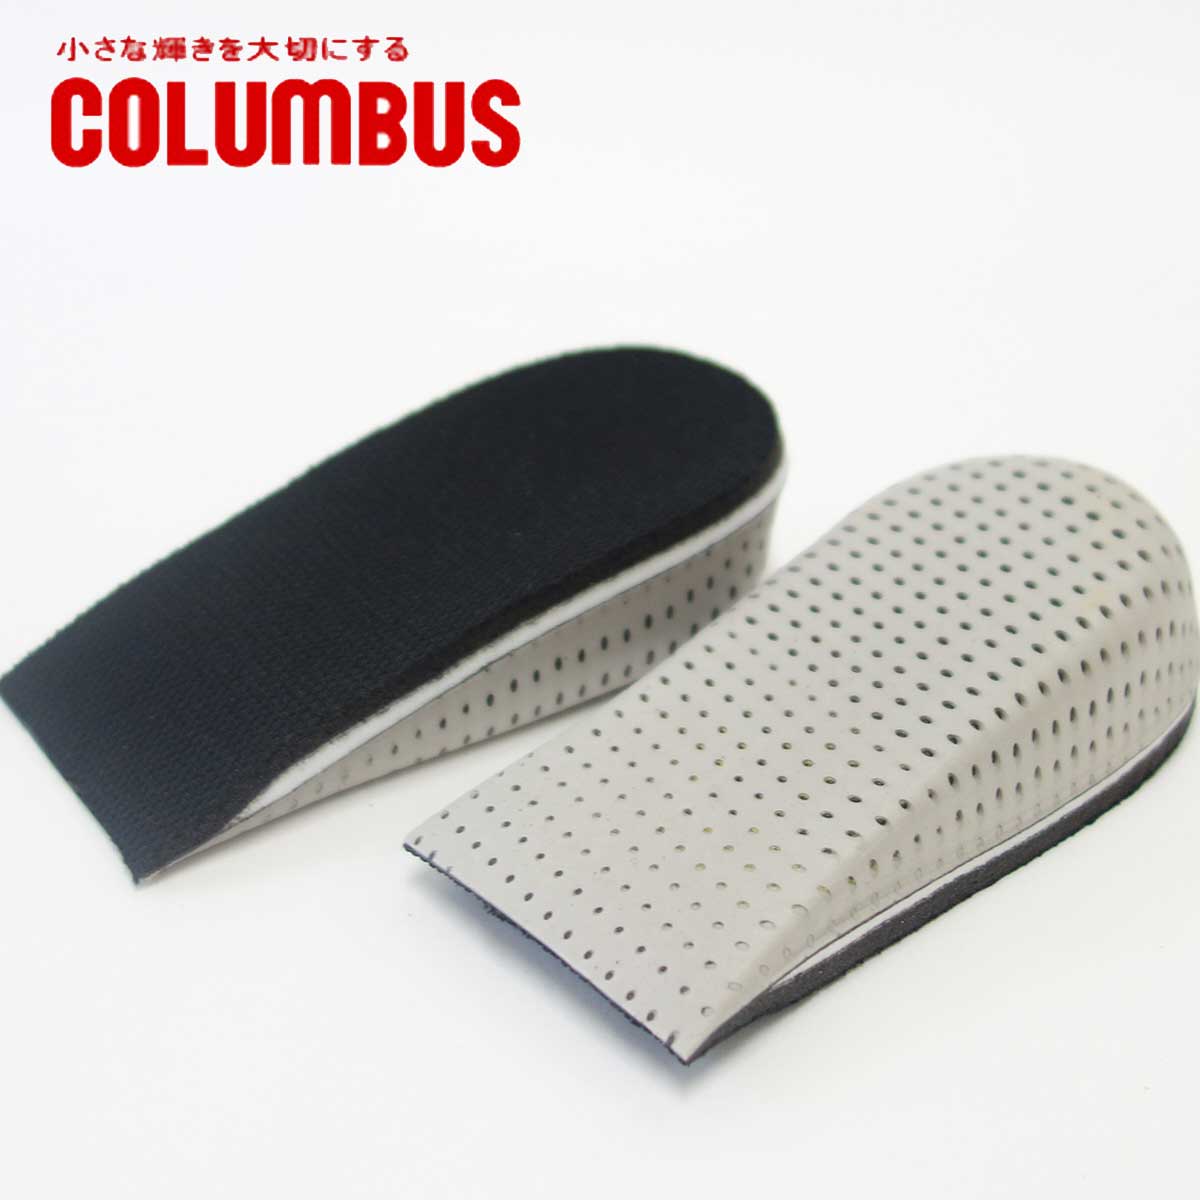 COLUMBUS コロンブス Heel fit & up（3.5cm） カカトフィット&アップ（女性用) ブーツスタイルを3.5cmアップ